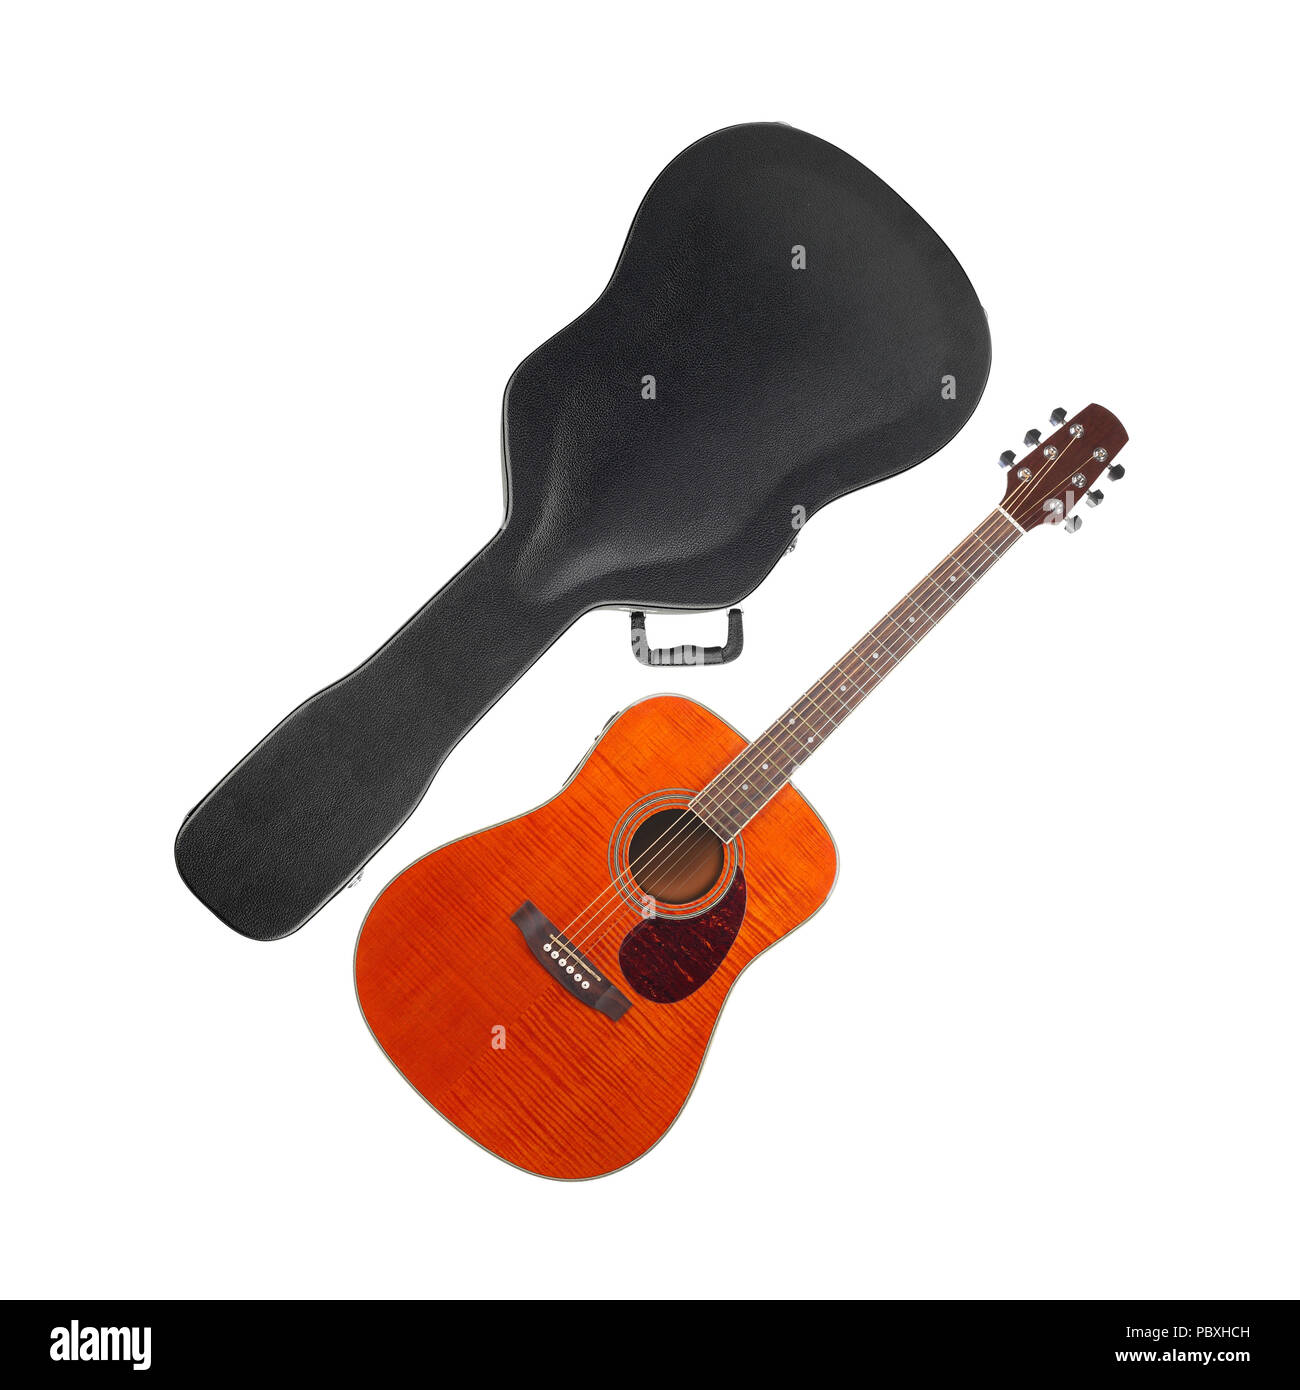 Instrument de musique - guitare western d'érable flamme Orange Etui rigide  isolé sur un fond blanc Photo Stock - Alamy